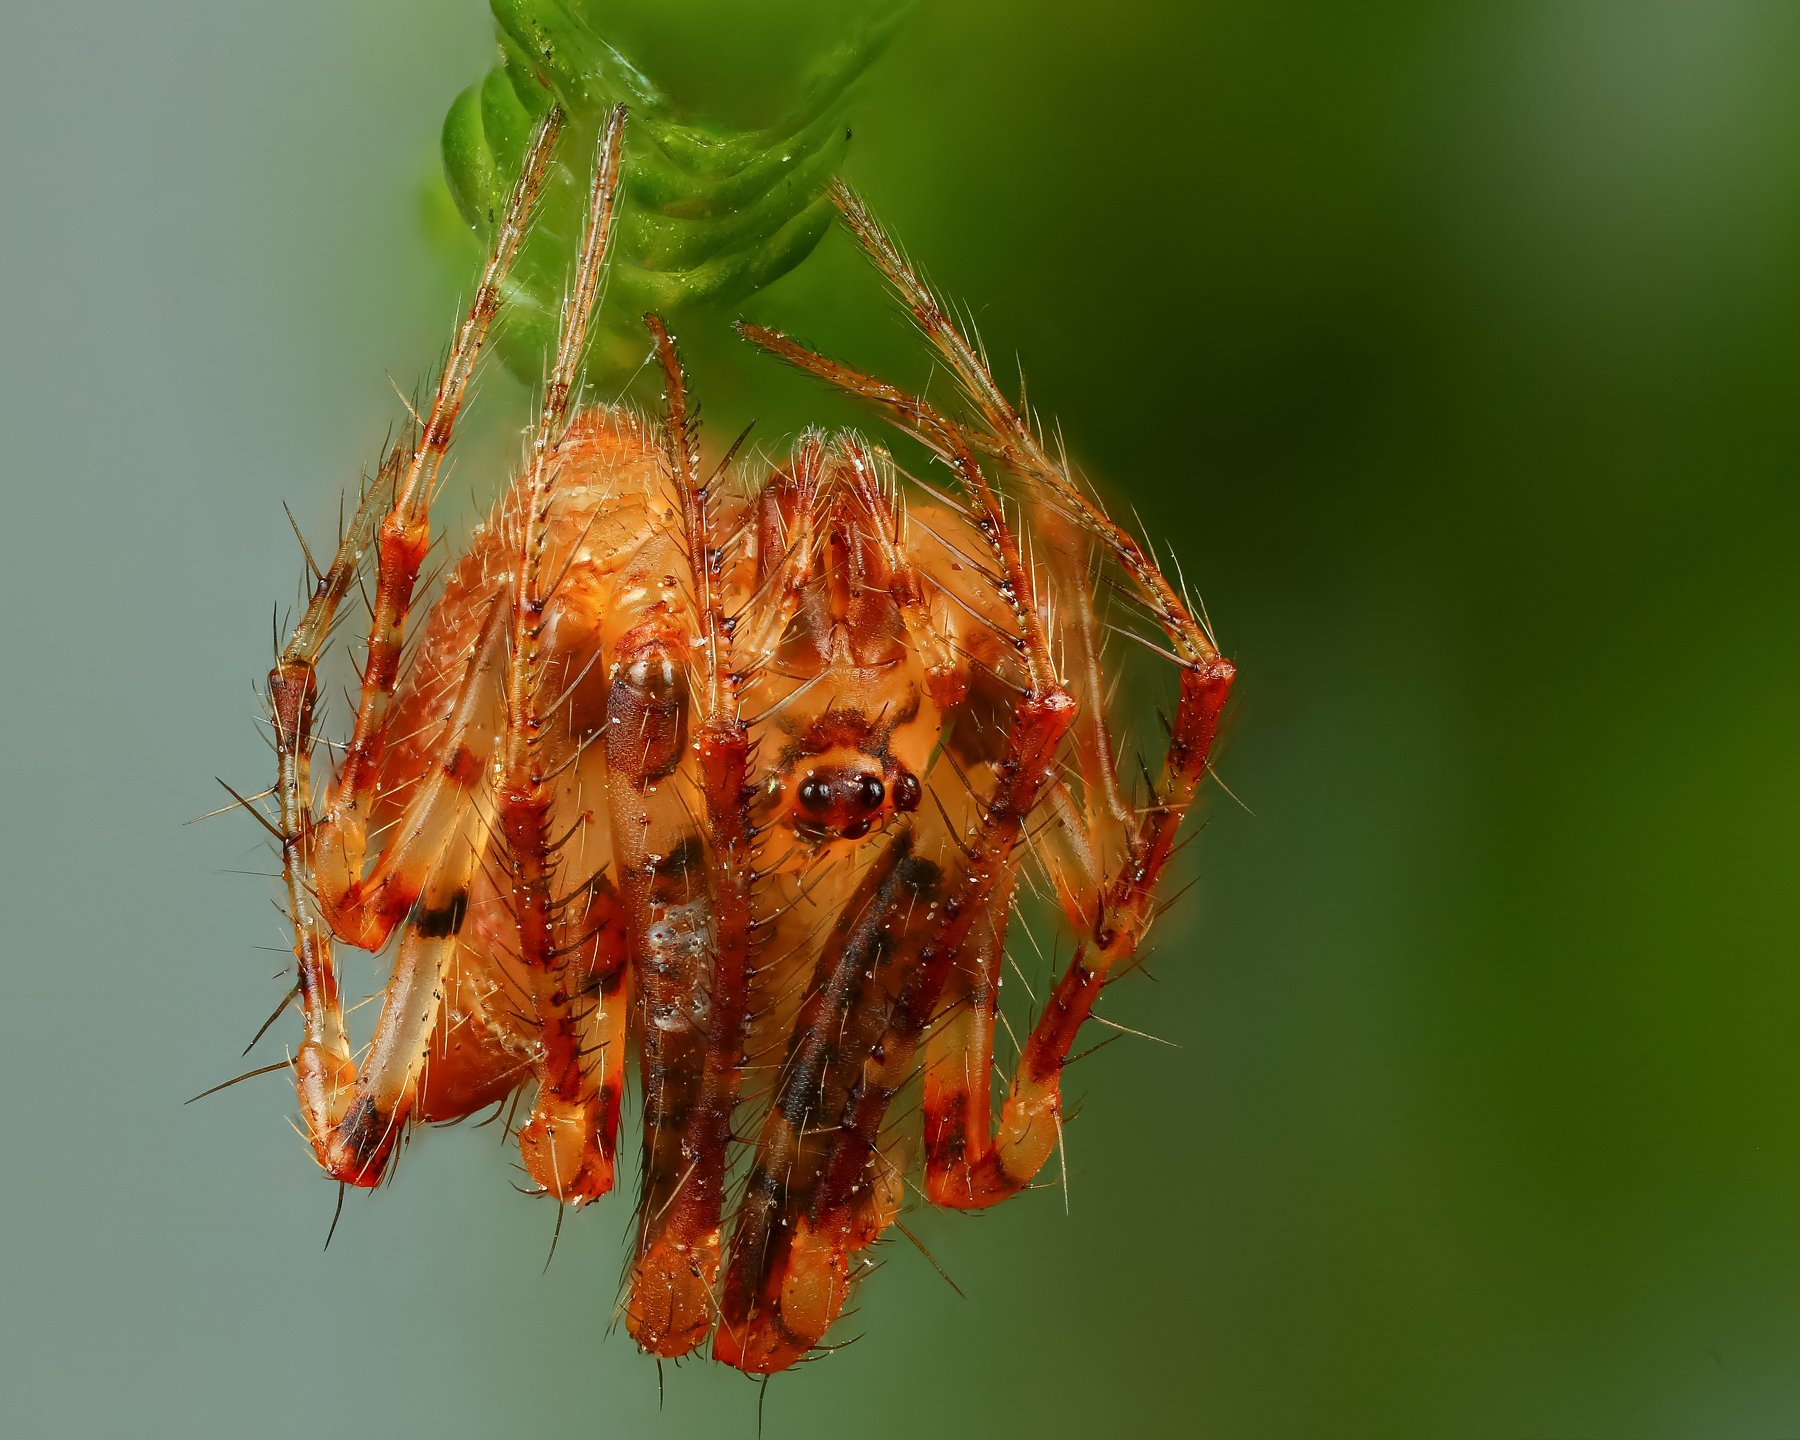 паук,макро,природа,растение,цвет,оранжевый,зеленый,животное, Андрей Шаповалов